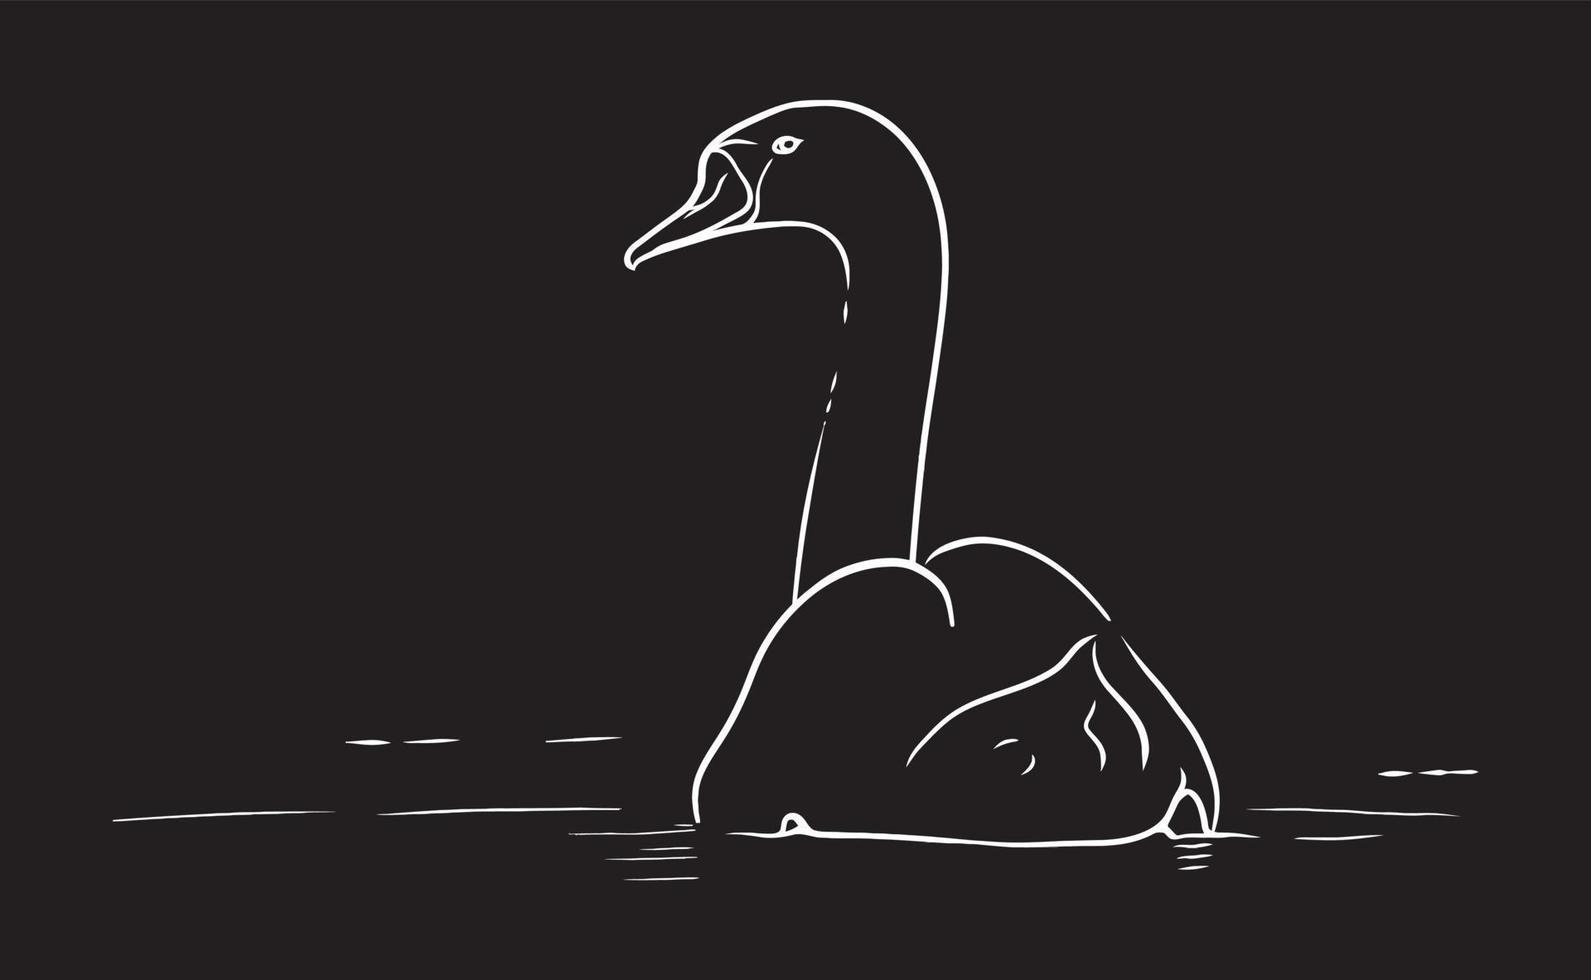 zwaan rustig zwemmen in het water, vector lijn kunst illustratie op zwarte achtergrond